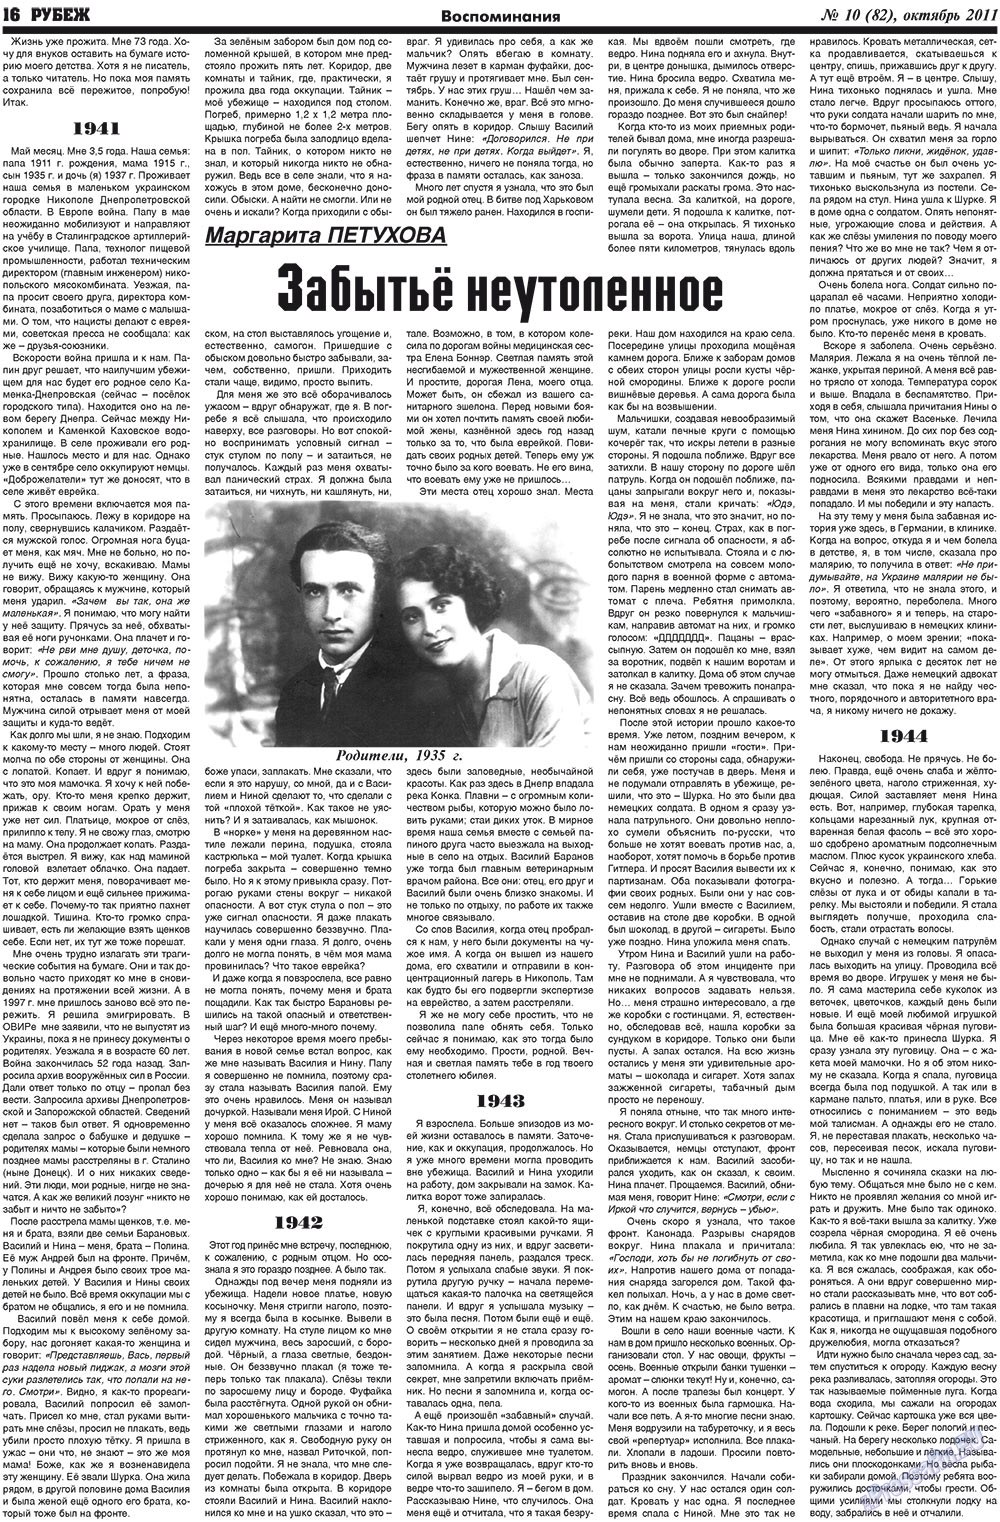 Рубеж (газета). 2011 год, номер 10, стр. 16